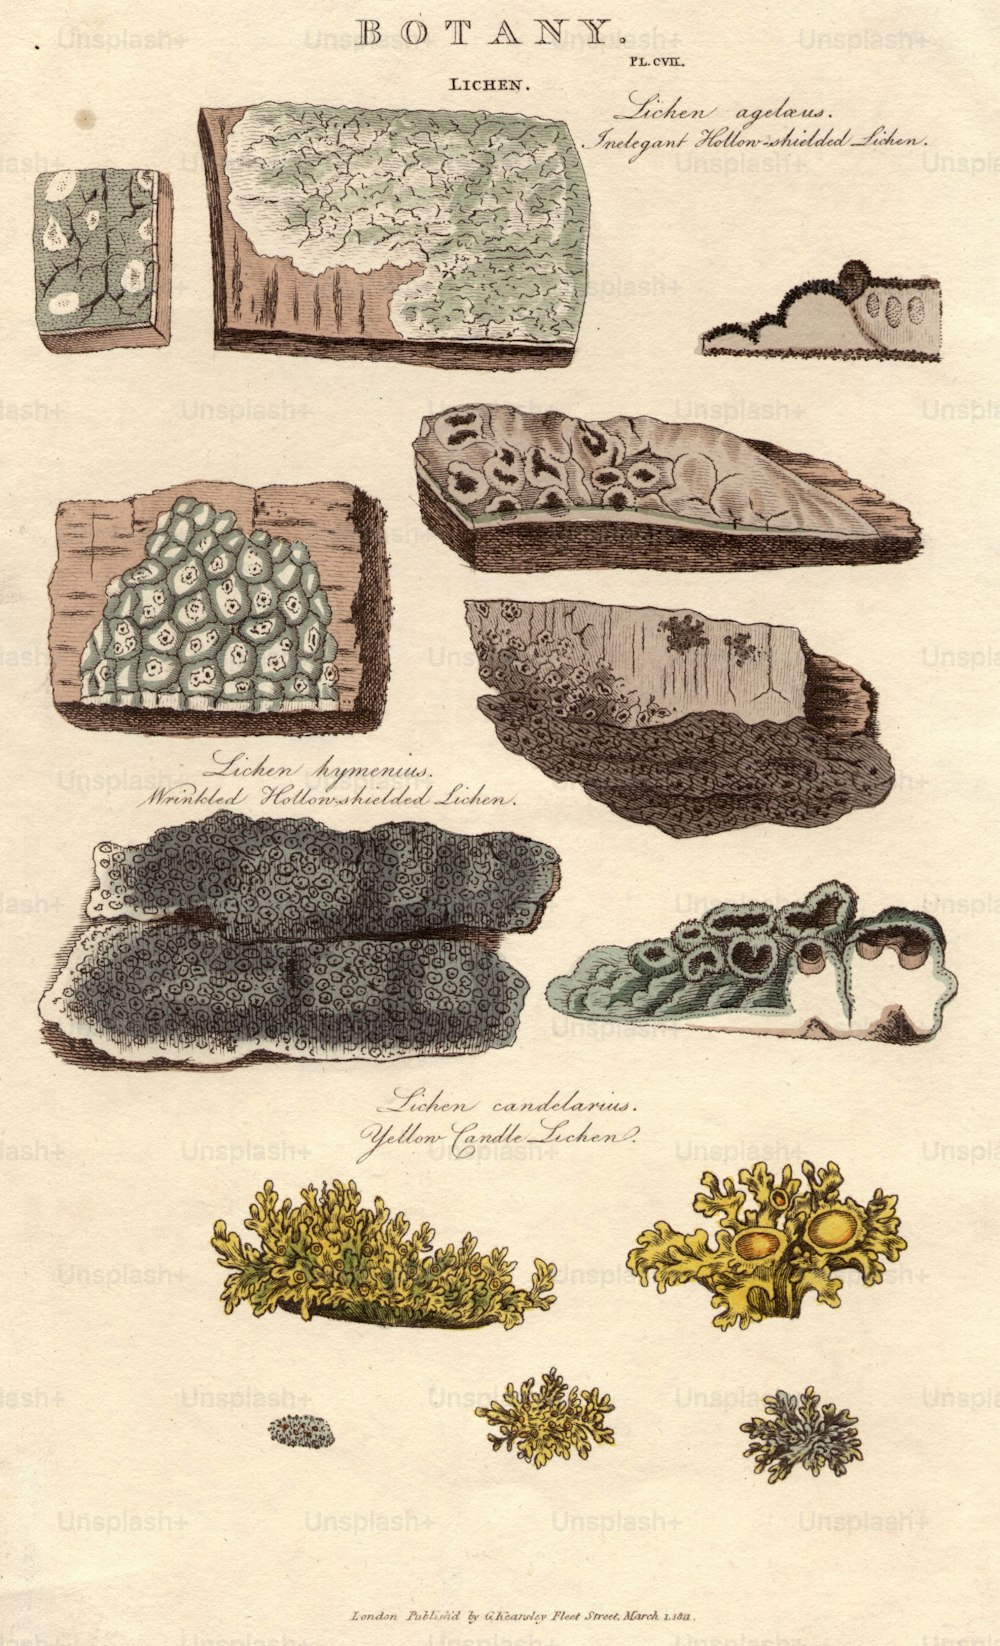 1er mars 1812 : Diverses espèces de lichens : lichen à bouclier creux inélégant (en haut), lichen ridé à bouclier creux (au centre) et lichen à bougie jaune (en bas).  (Photo de Hulton Archive/Getty Images)